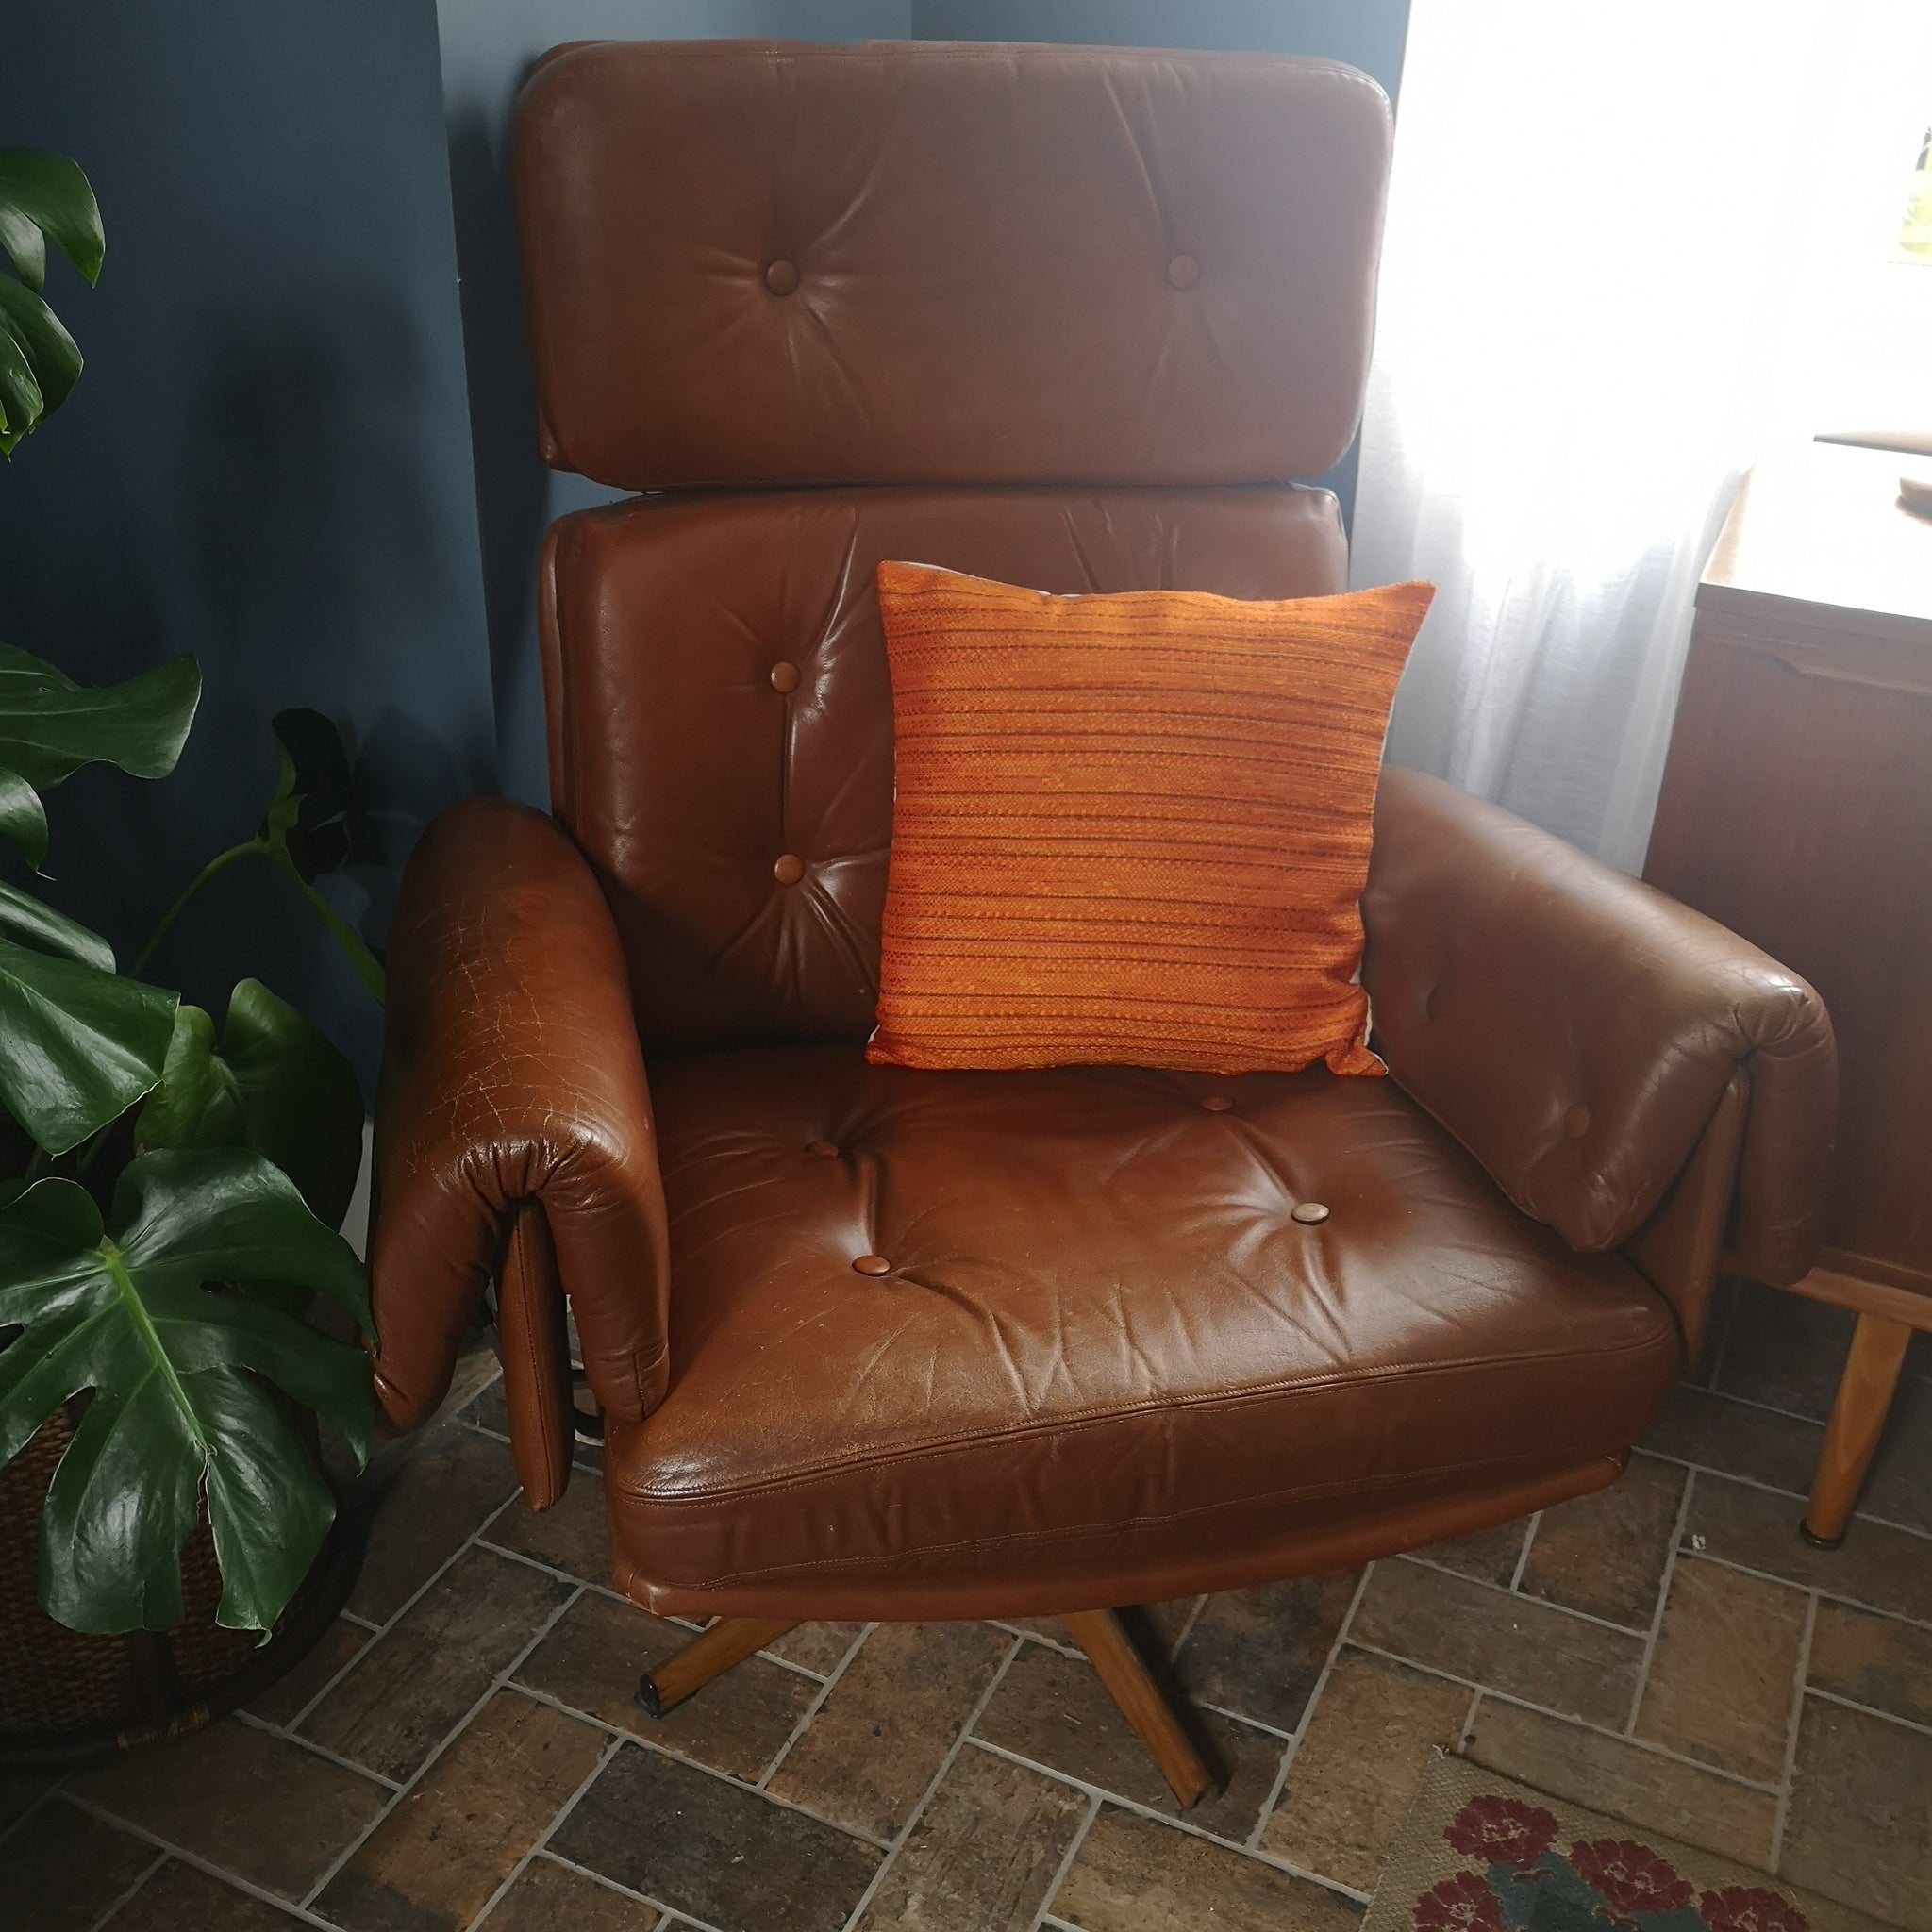 Orange Retro Cushion Cover